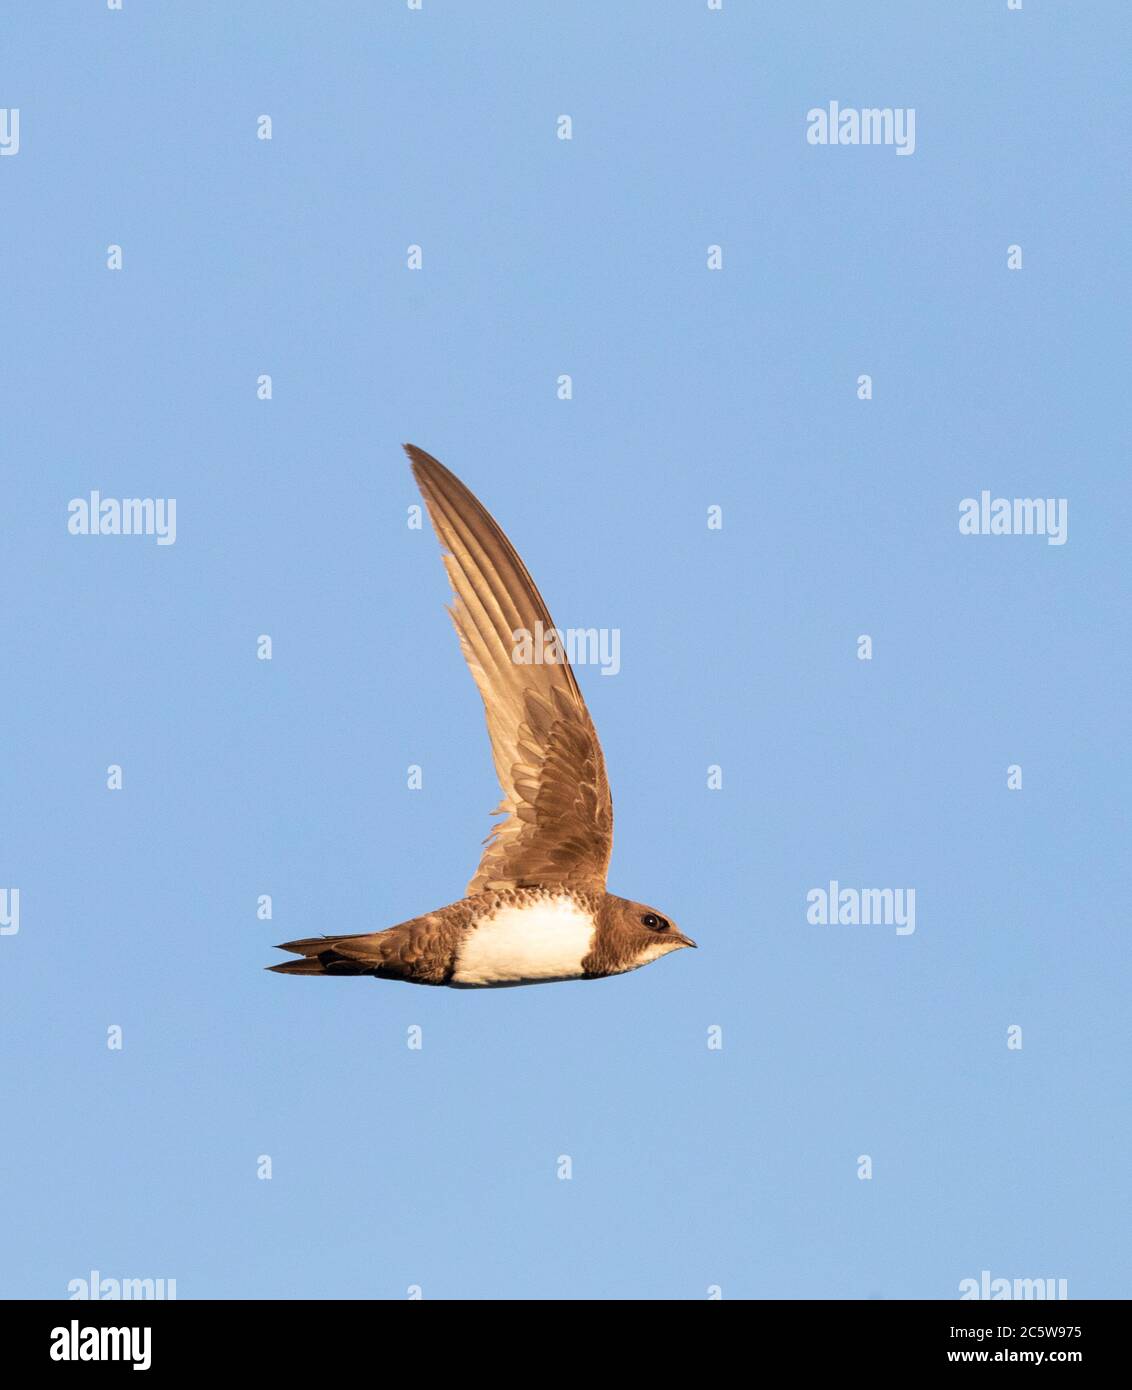 Alpine Swift (Apus melba) in flight in Spain. Seen from the side, showing under wing. Stock Photo